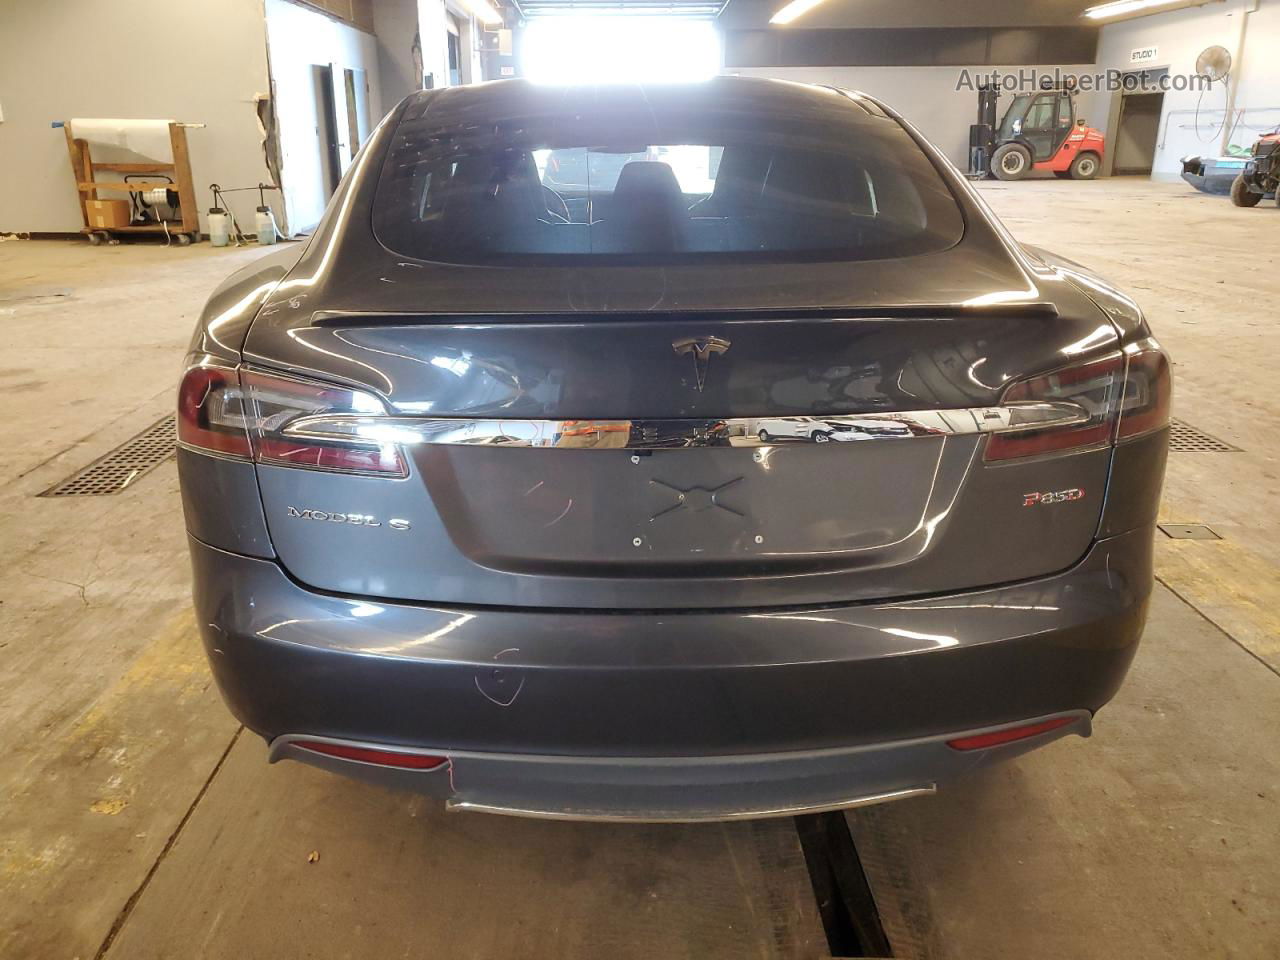 2015 Tesla Model S P85d Серый vin: 5YJSA1H47FF081155